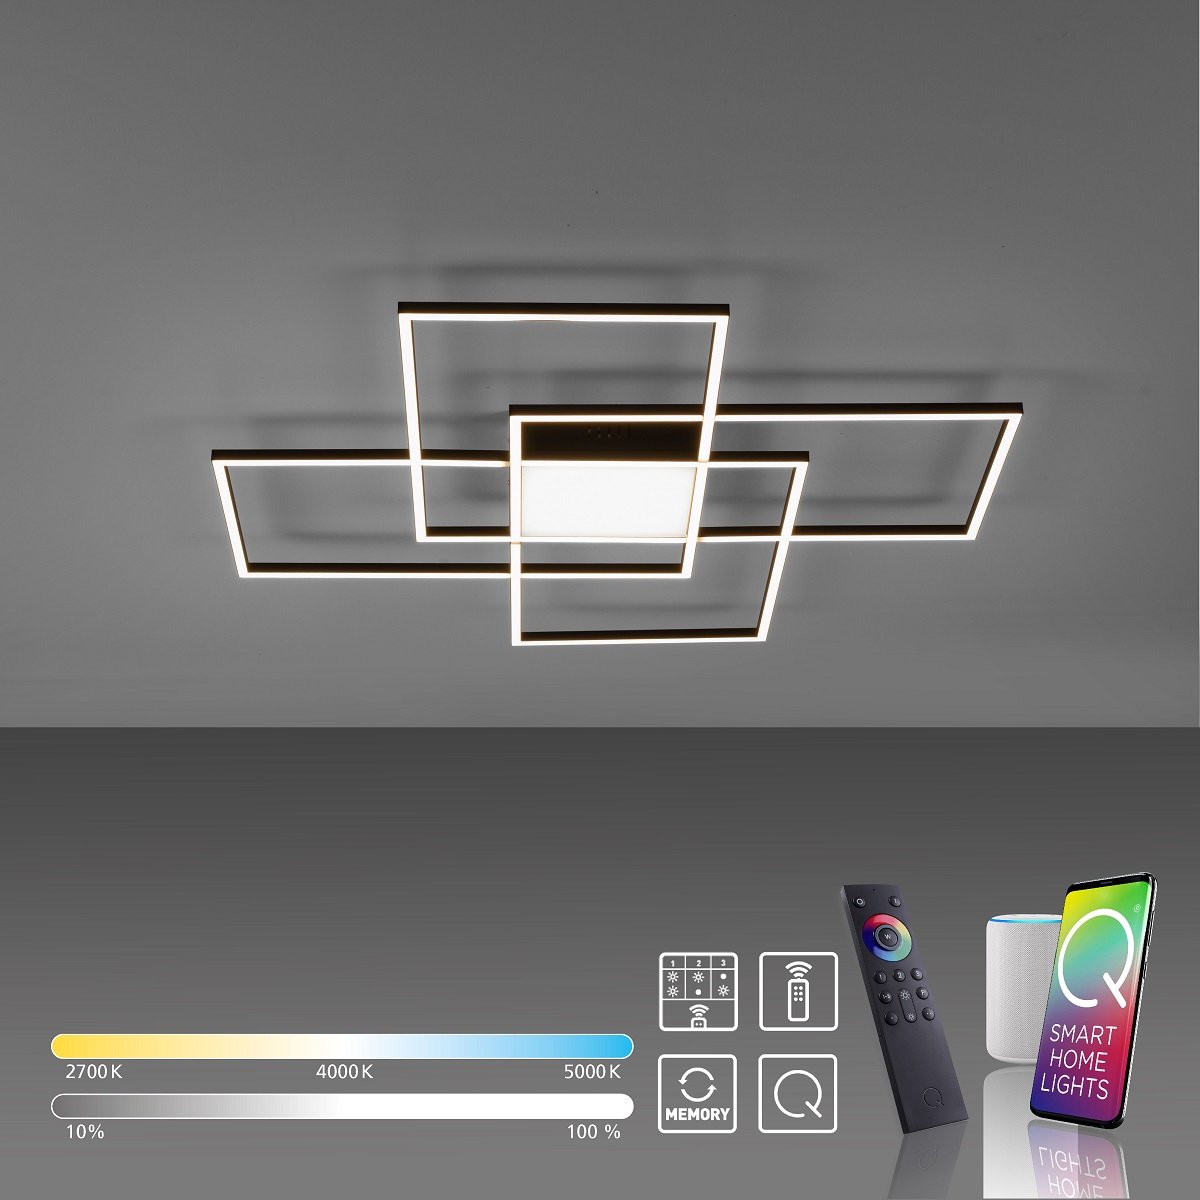 & Home Q-ASMIN im Deckenleuchte Smart Shop Lampen --> Paul Neuhaus LED 6073-18 schwarz online kaufen 80x80cm Leuchten